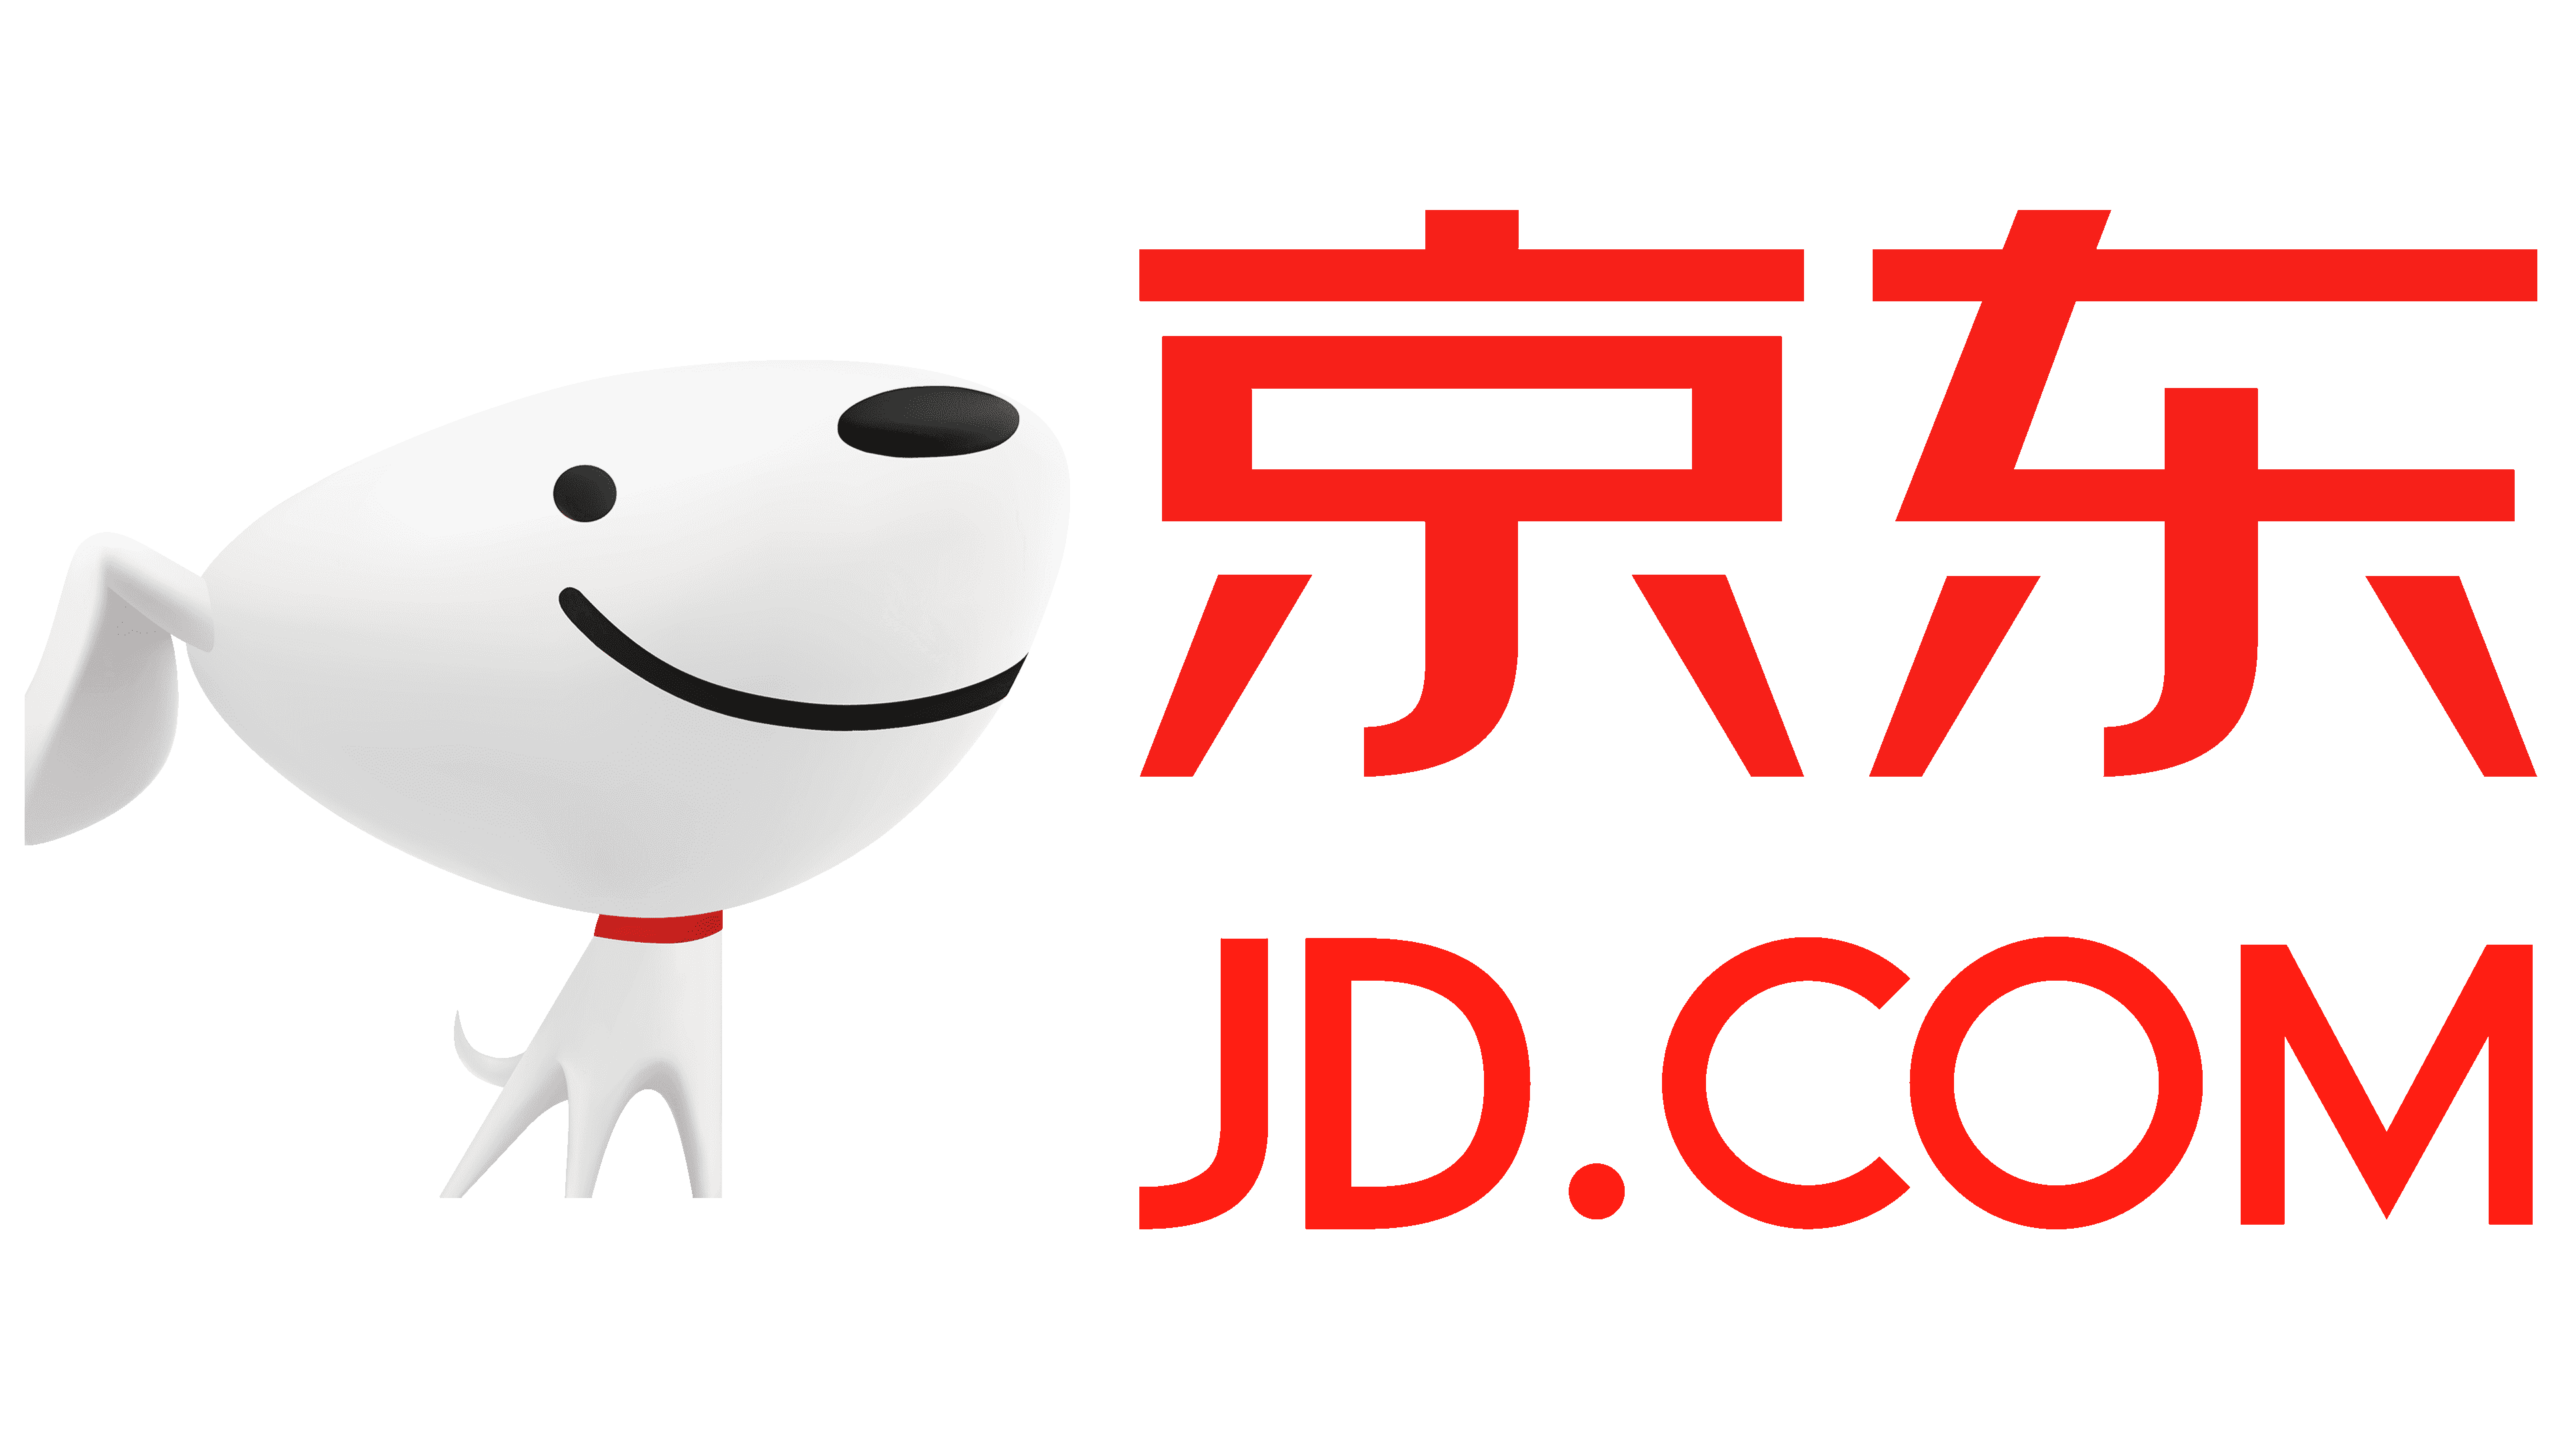 Proksi untuk jd.com